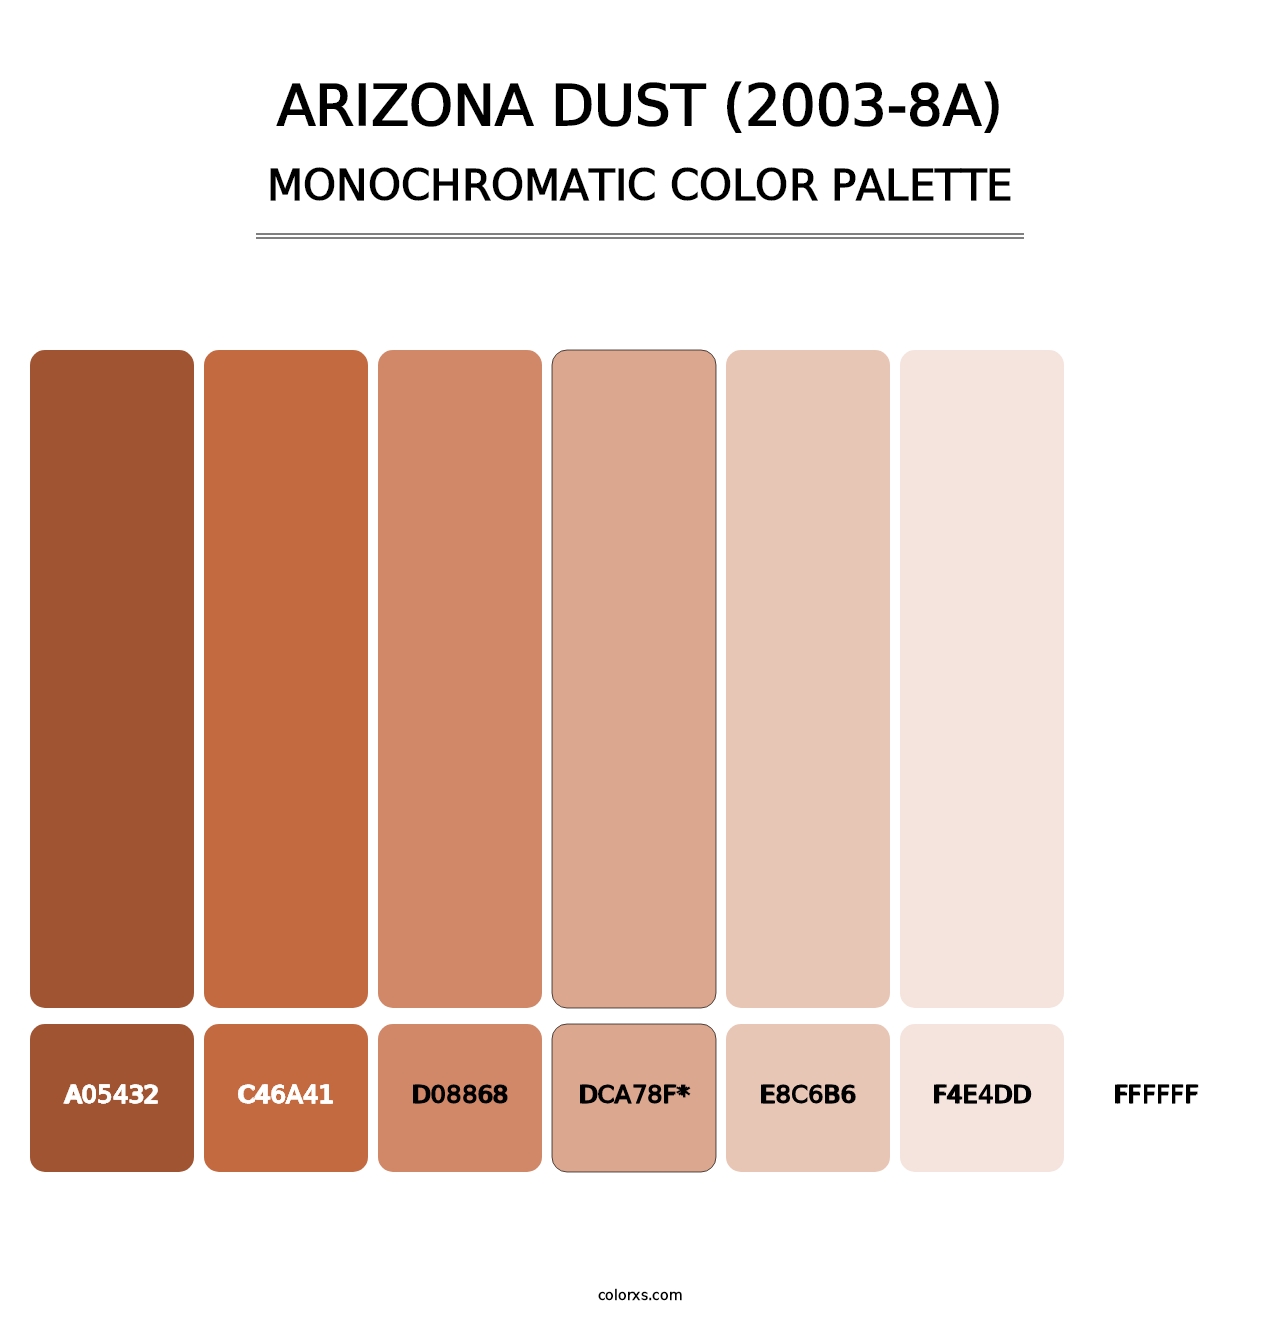 Arizona Dust (2003-8A) - Monochromatic Color Palette